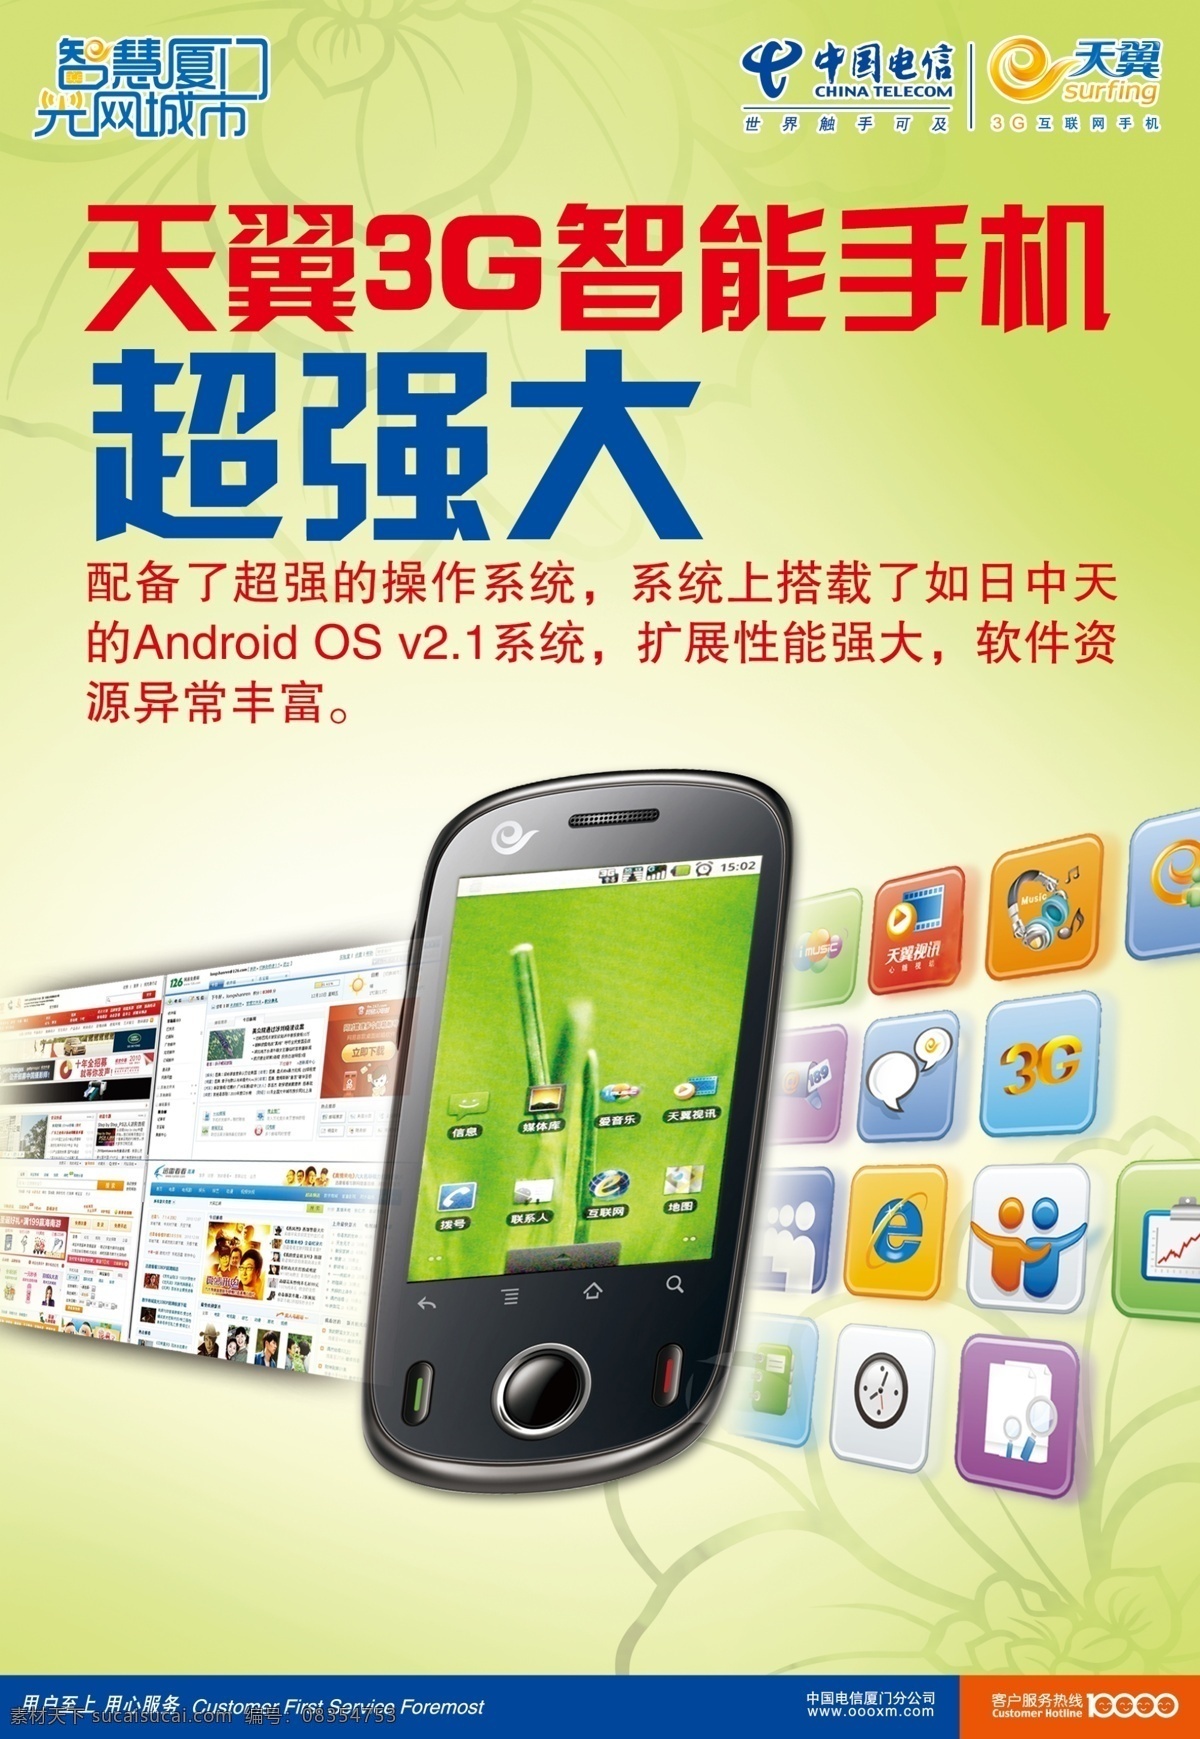 中国电信 天翼 手机 天翼手机 海报 背景图 psd源文件 广告设计模板 源文件